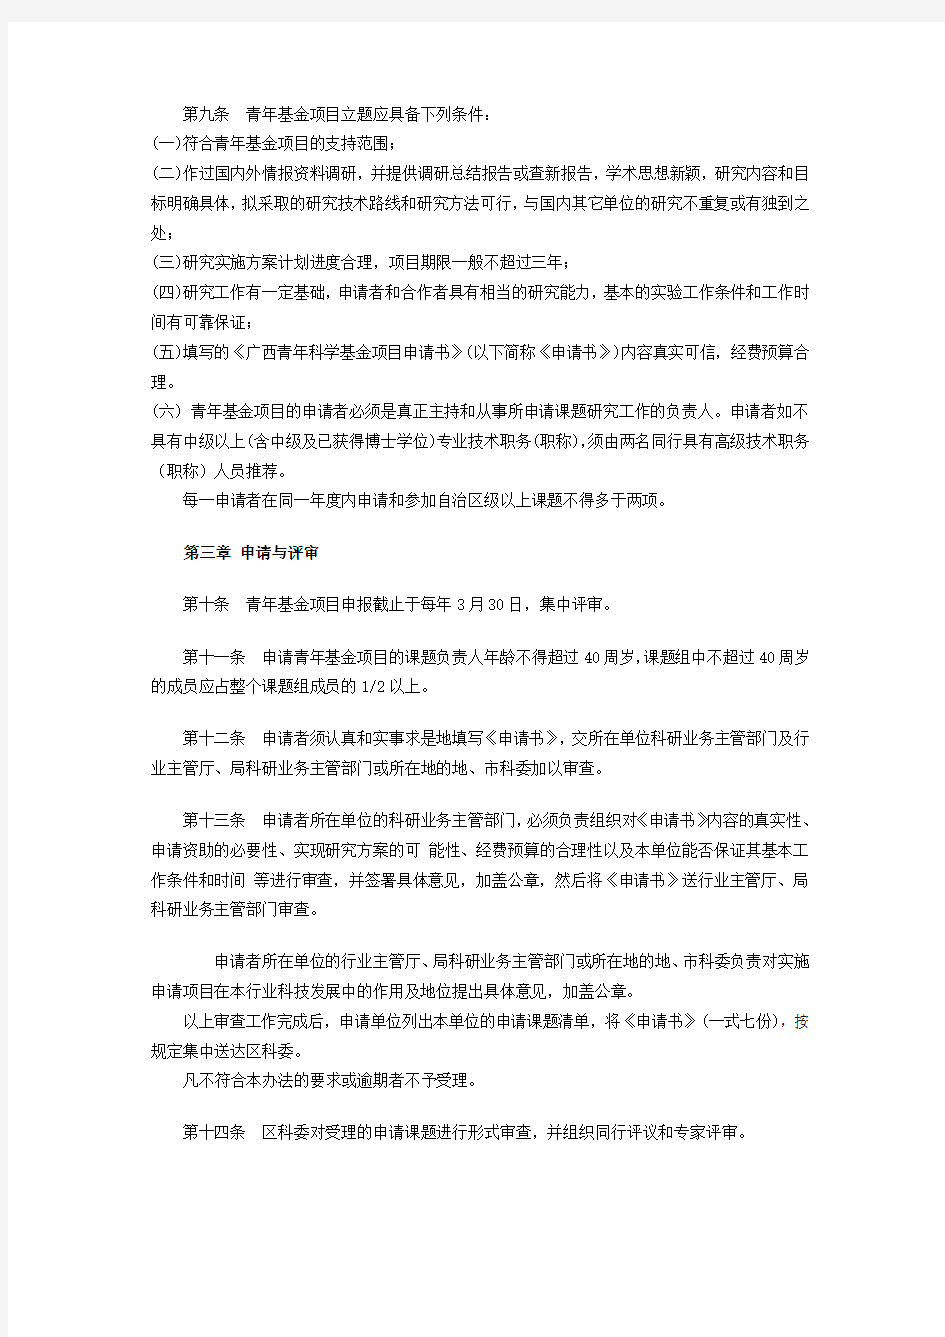 广西青年科学基金项目管理暂行办法